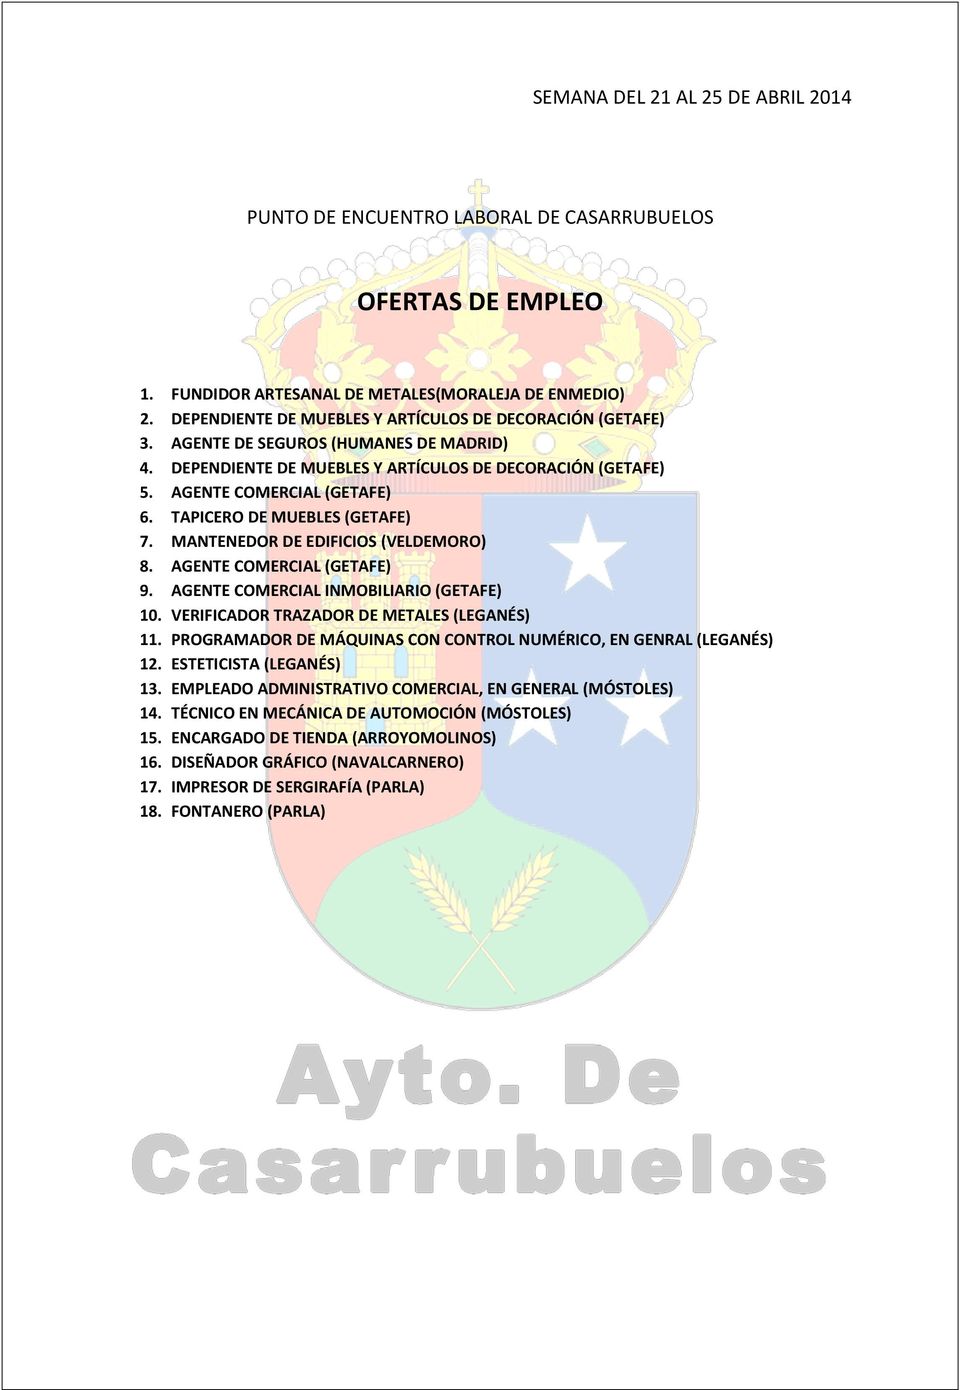 MANTENEDOR DE EDIFICIOS (VELDEMORO) 8. AGENTE COMERCIAL (GETAFE) 9. AGENTE COMERCIAL INMOBILIARIO (GETAFE) 10. VERIFICADOR TRAZADOR DE METALES (LEGANÉS) 11.